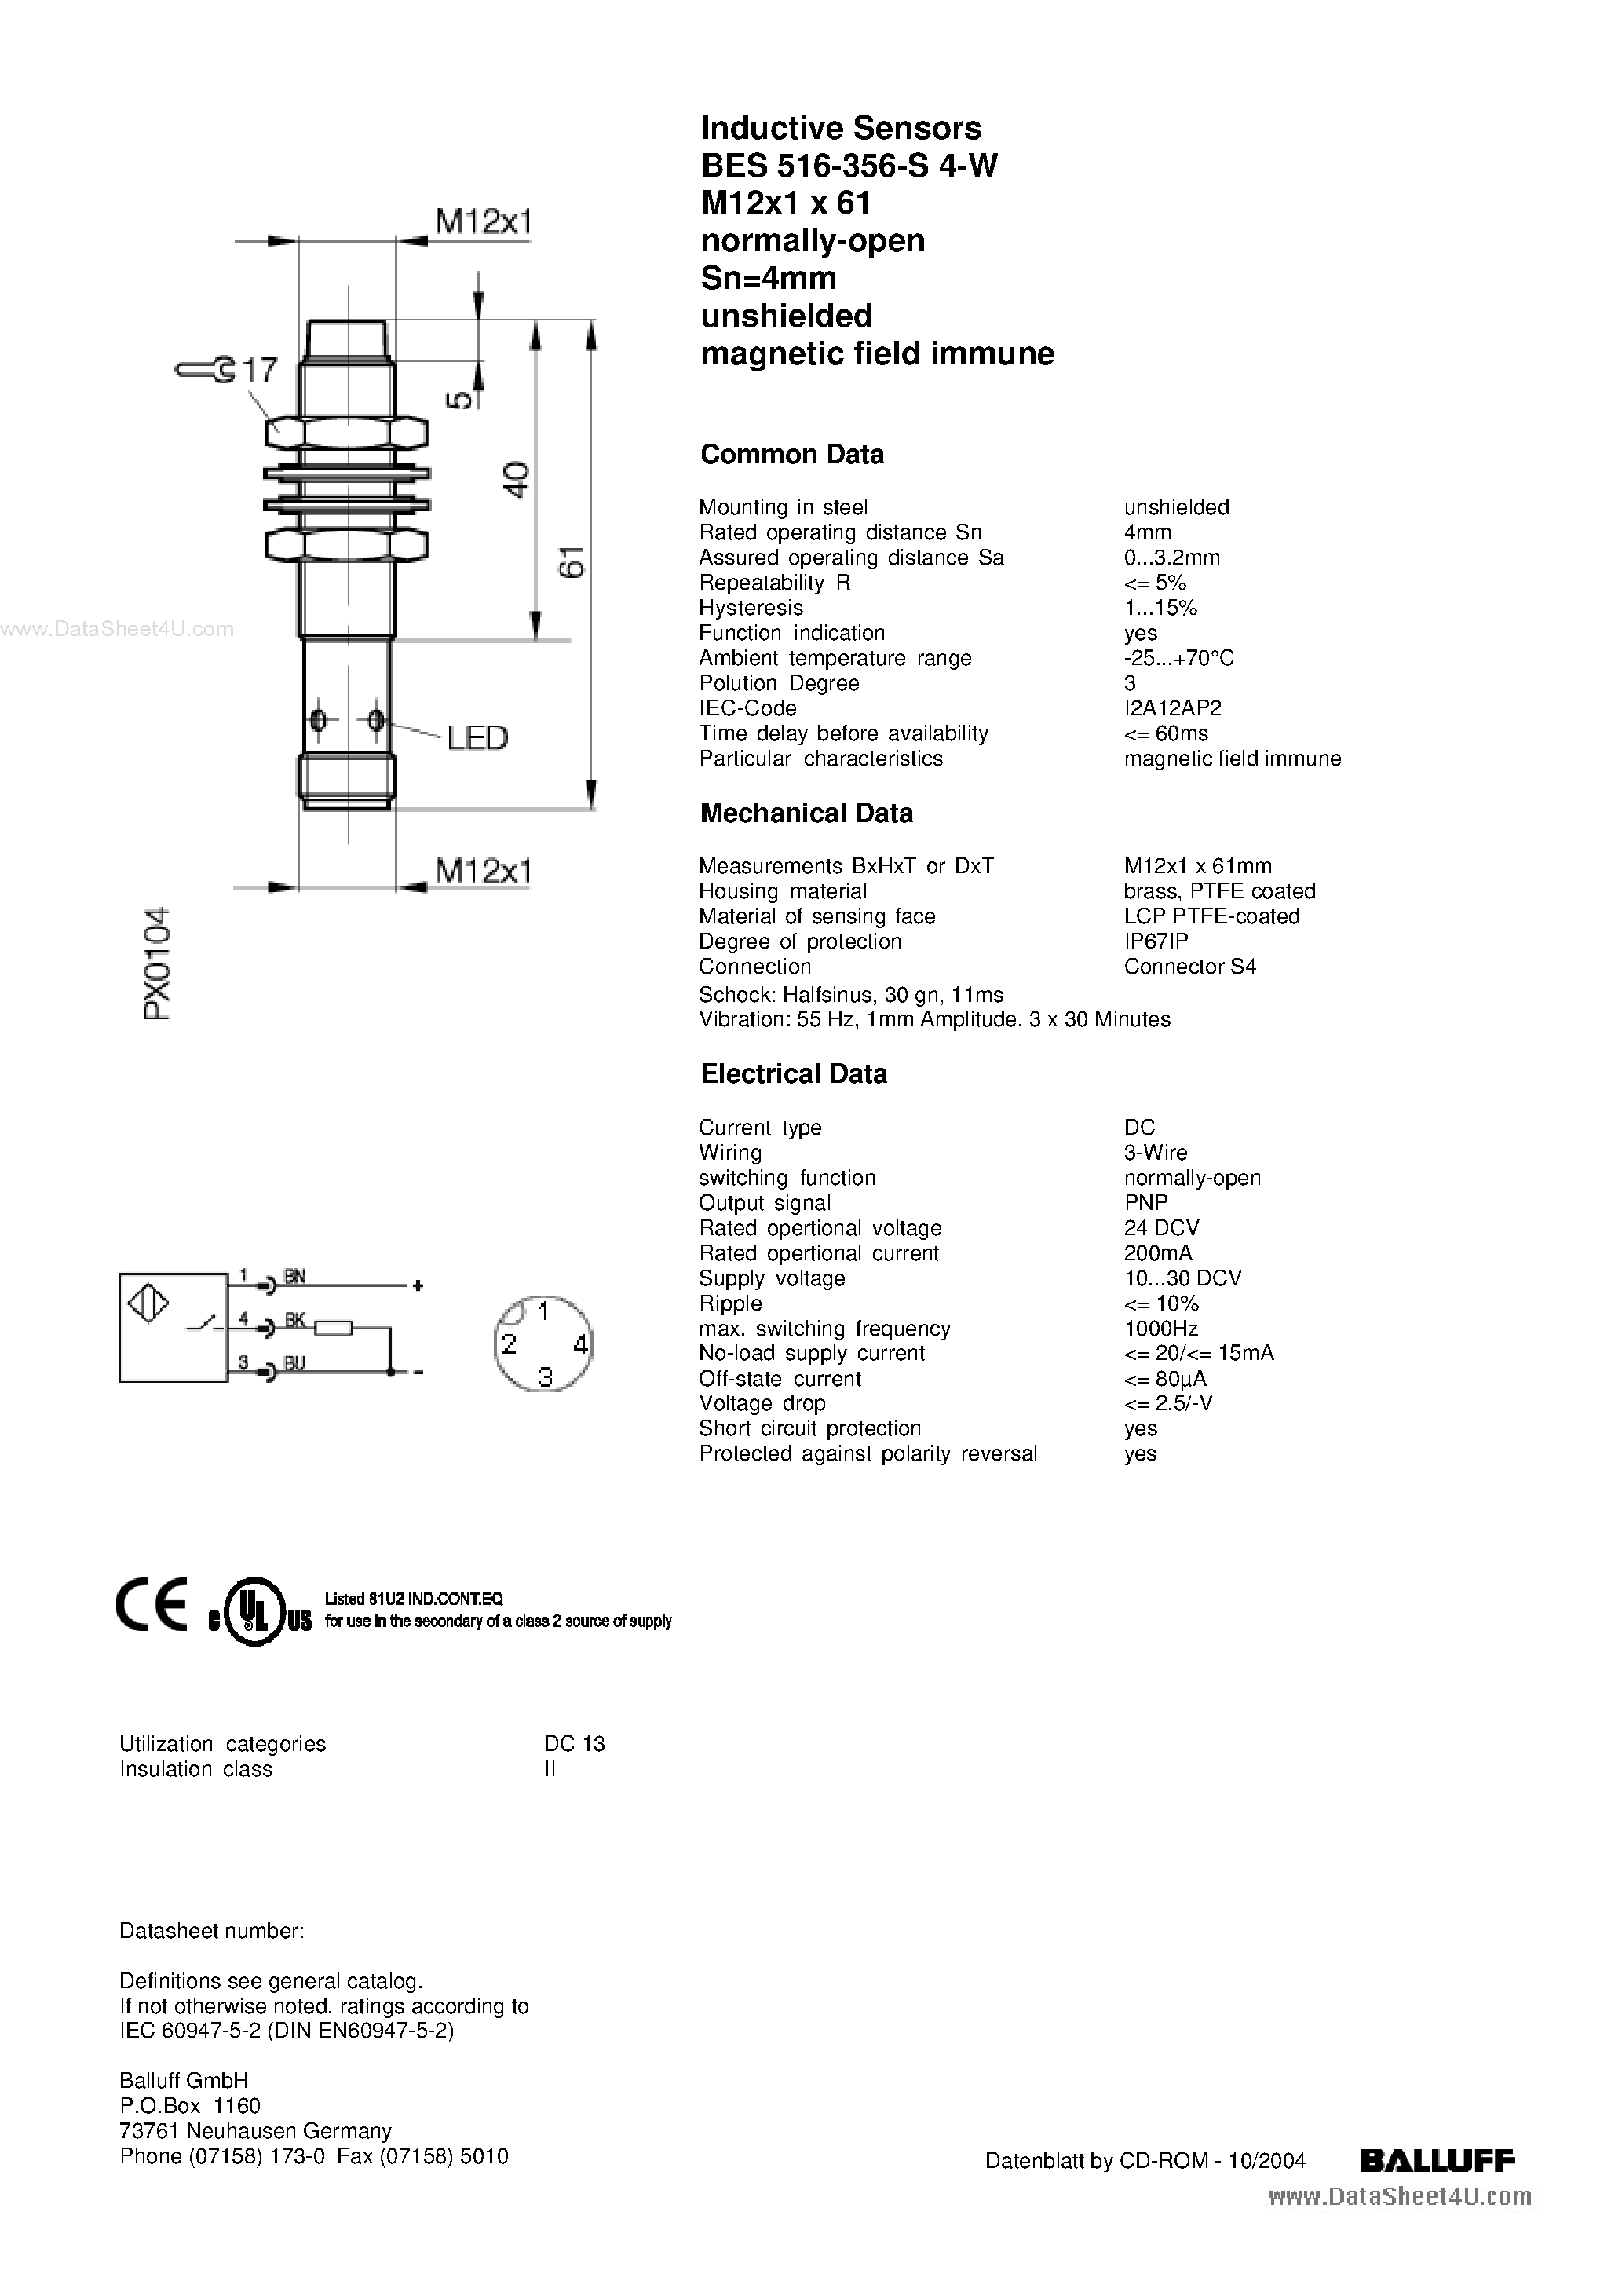 Даташит BES-516-356-S4-W - Inductive Sensors страница 1